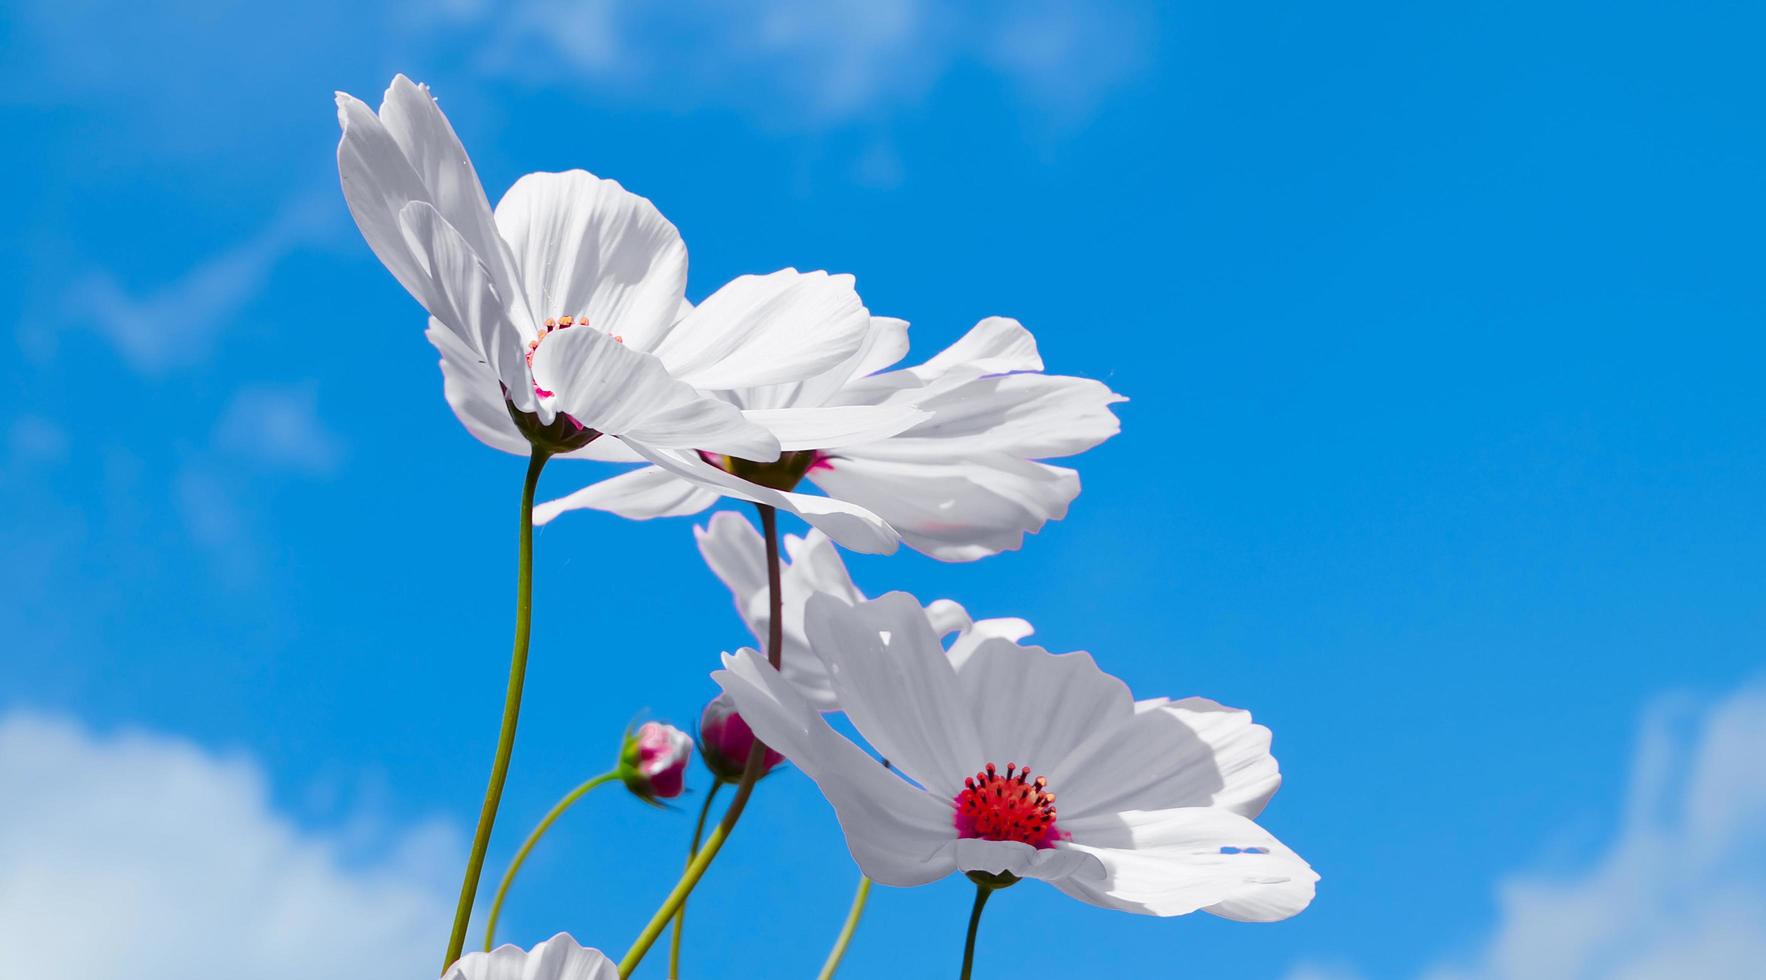 vista de ângulo baixo de plantas floridas do cosmos branco contra o céu azul foto